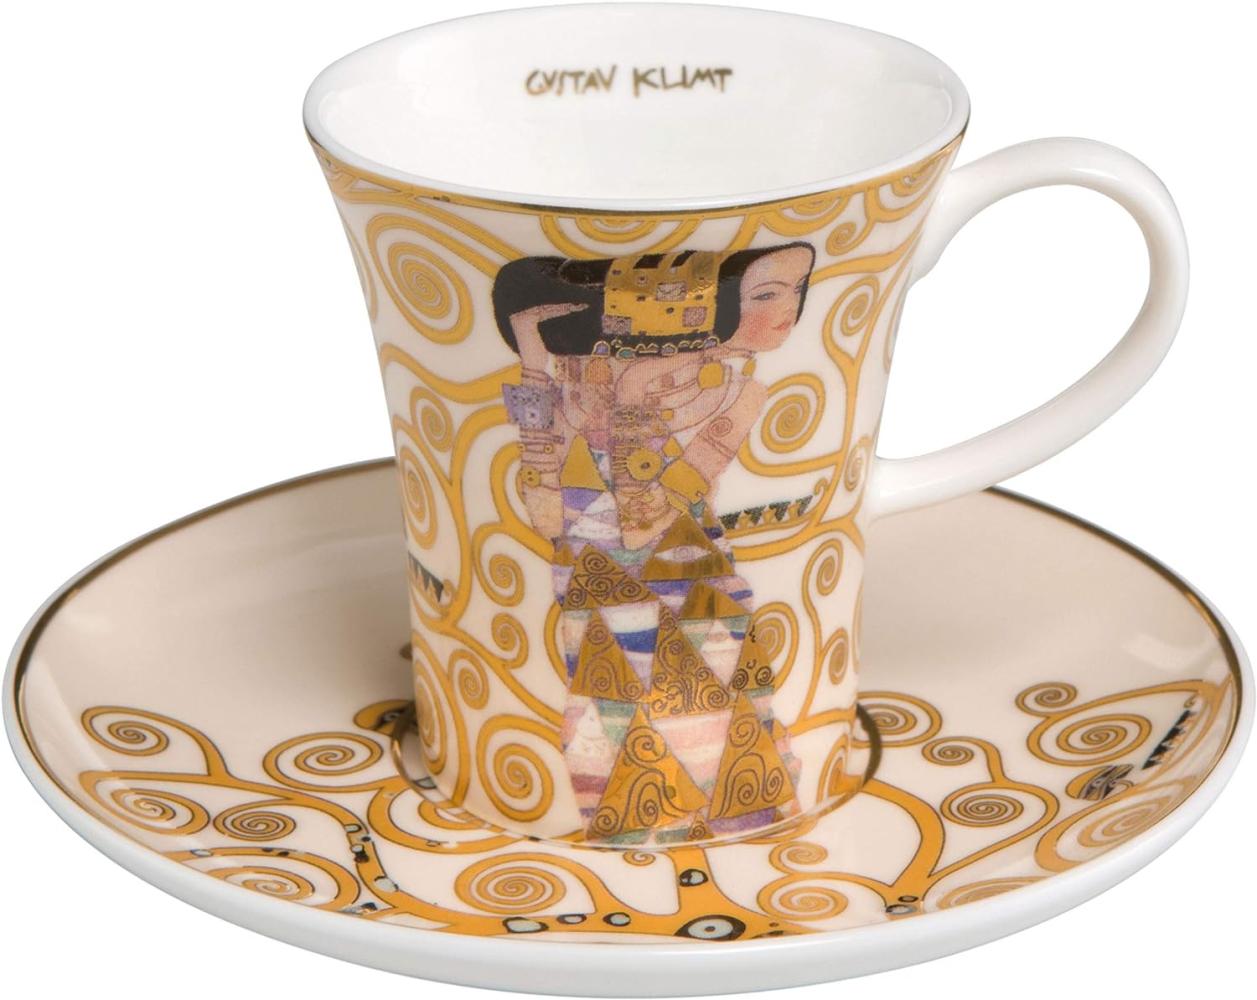 Goebel Artis Orbis Gustav Klimt Die Erwartung - Espressotasse 67011621 Bild 1